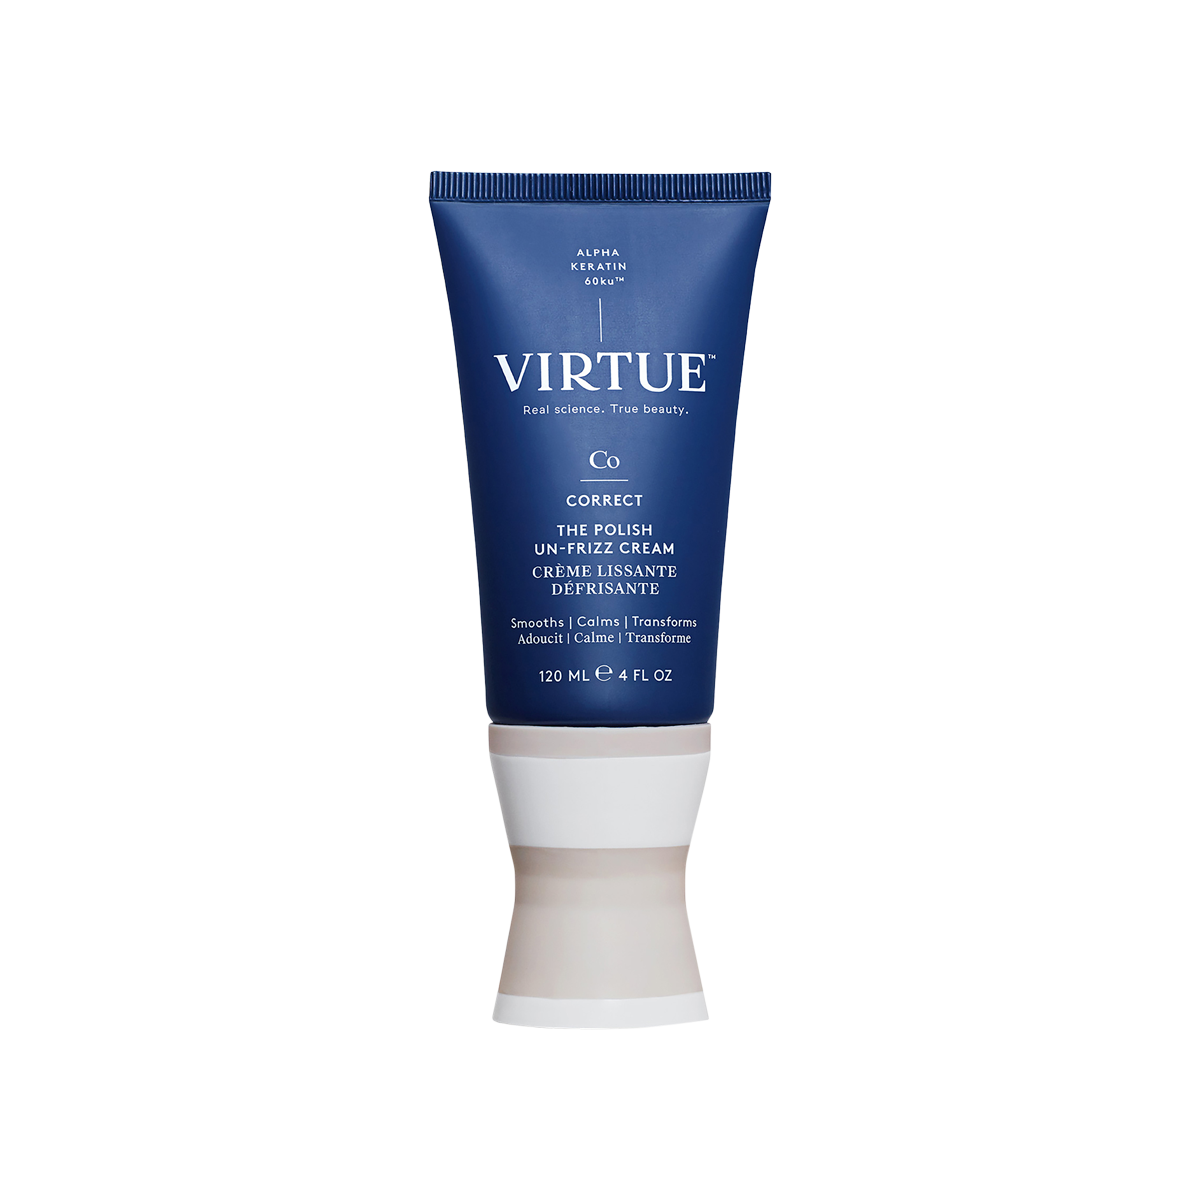 Virtue - Un-Frizz Cream